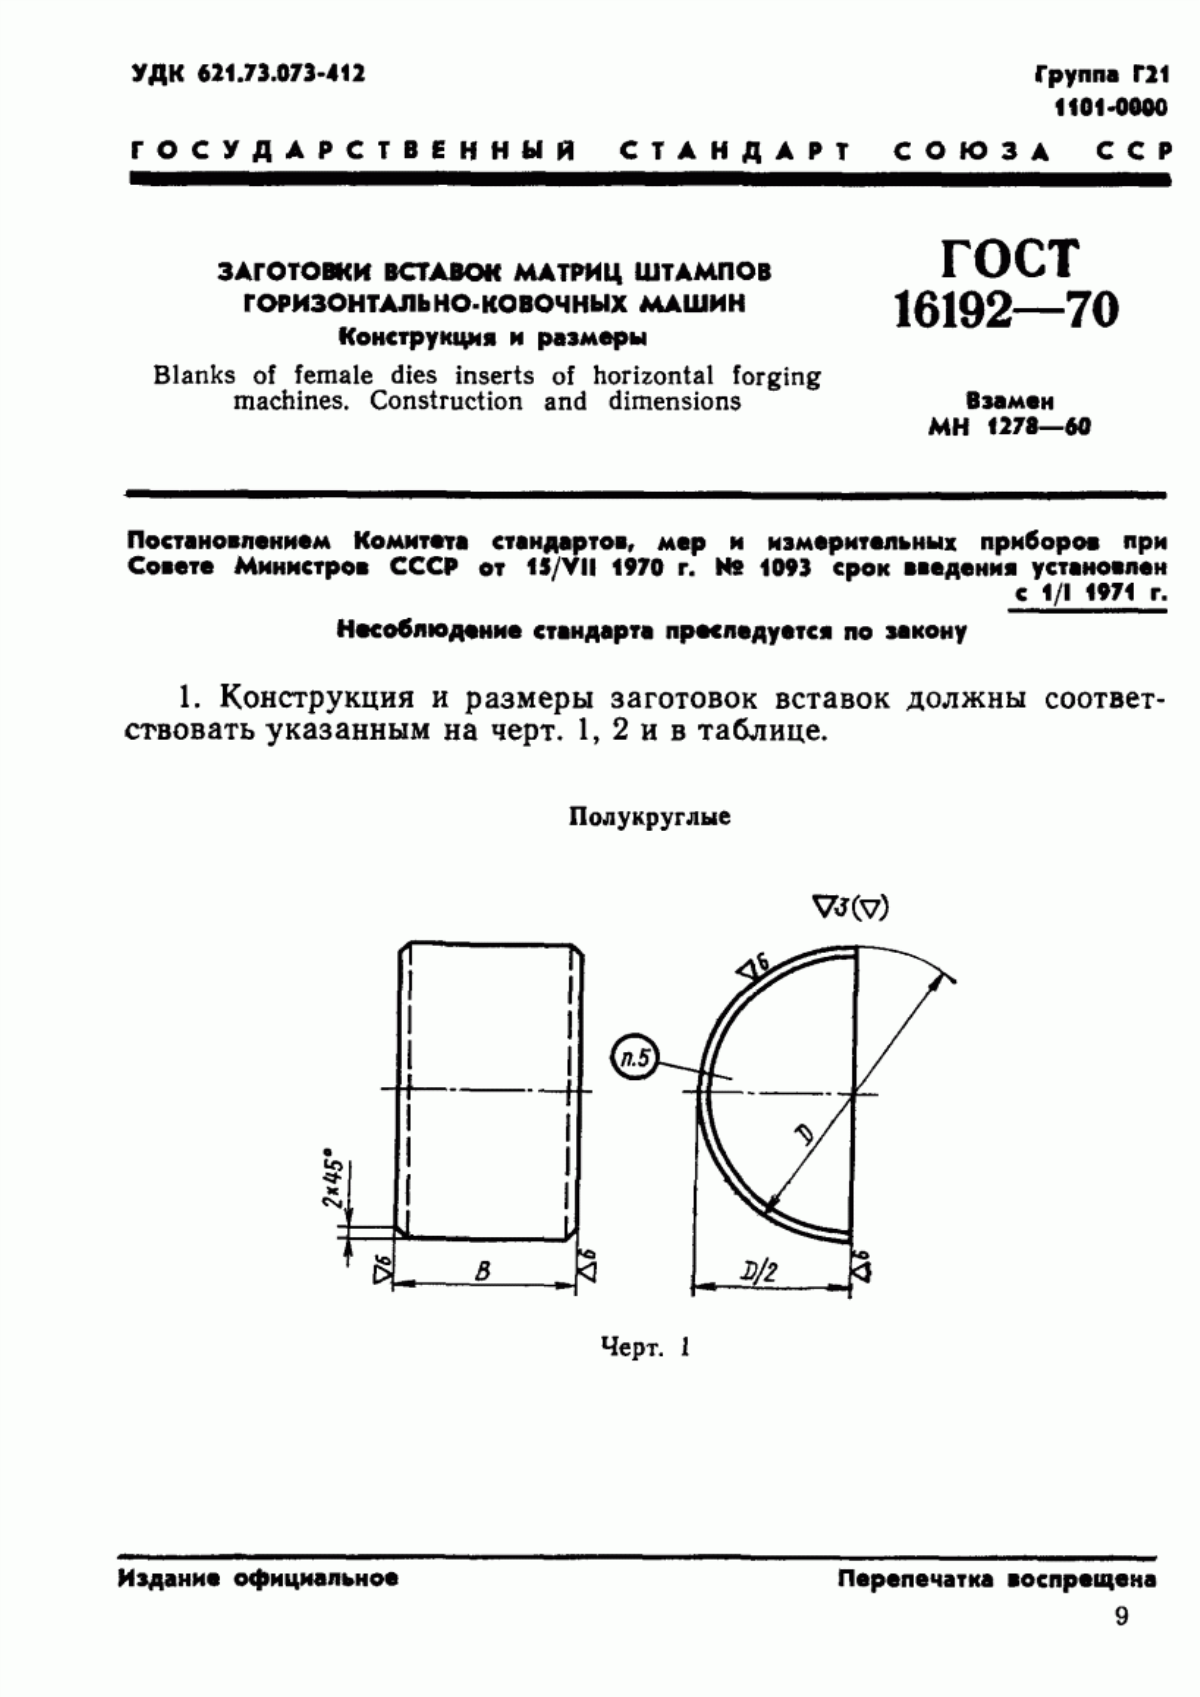 ГОСТ 16192-70 Заготовки вставок матриц штампов горизонтально-ковочных машин. Конструкция и размеры